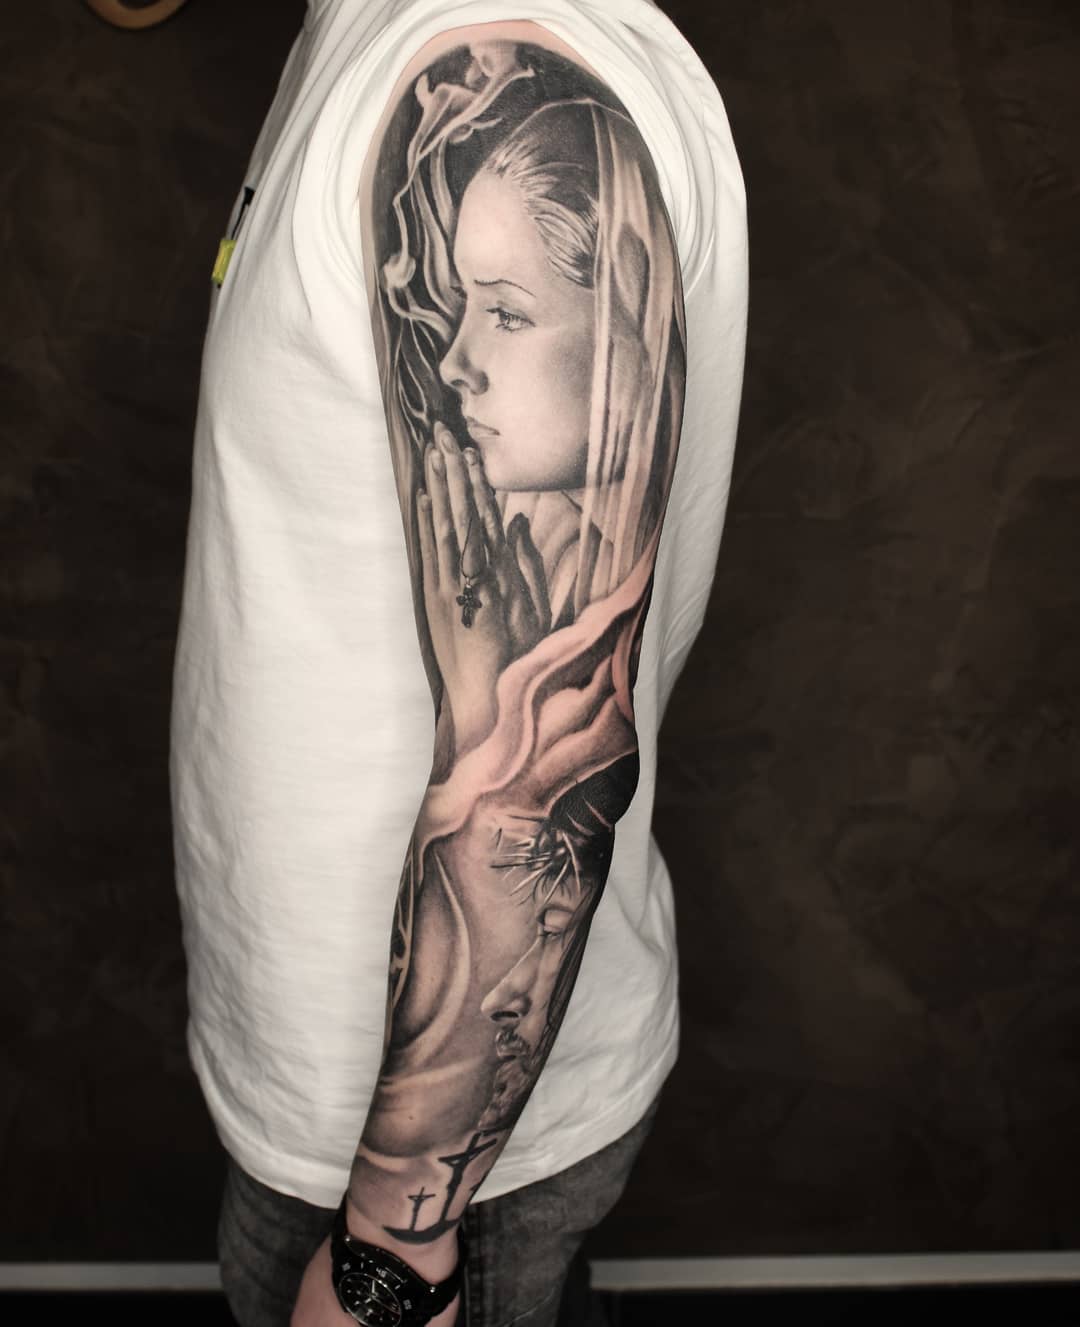 Finished sleeve. Thx so much fot the trust.
#germantattooers #tattooworkers #tat